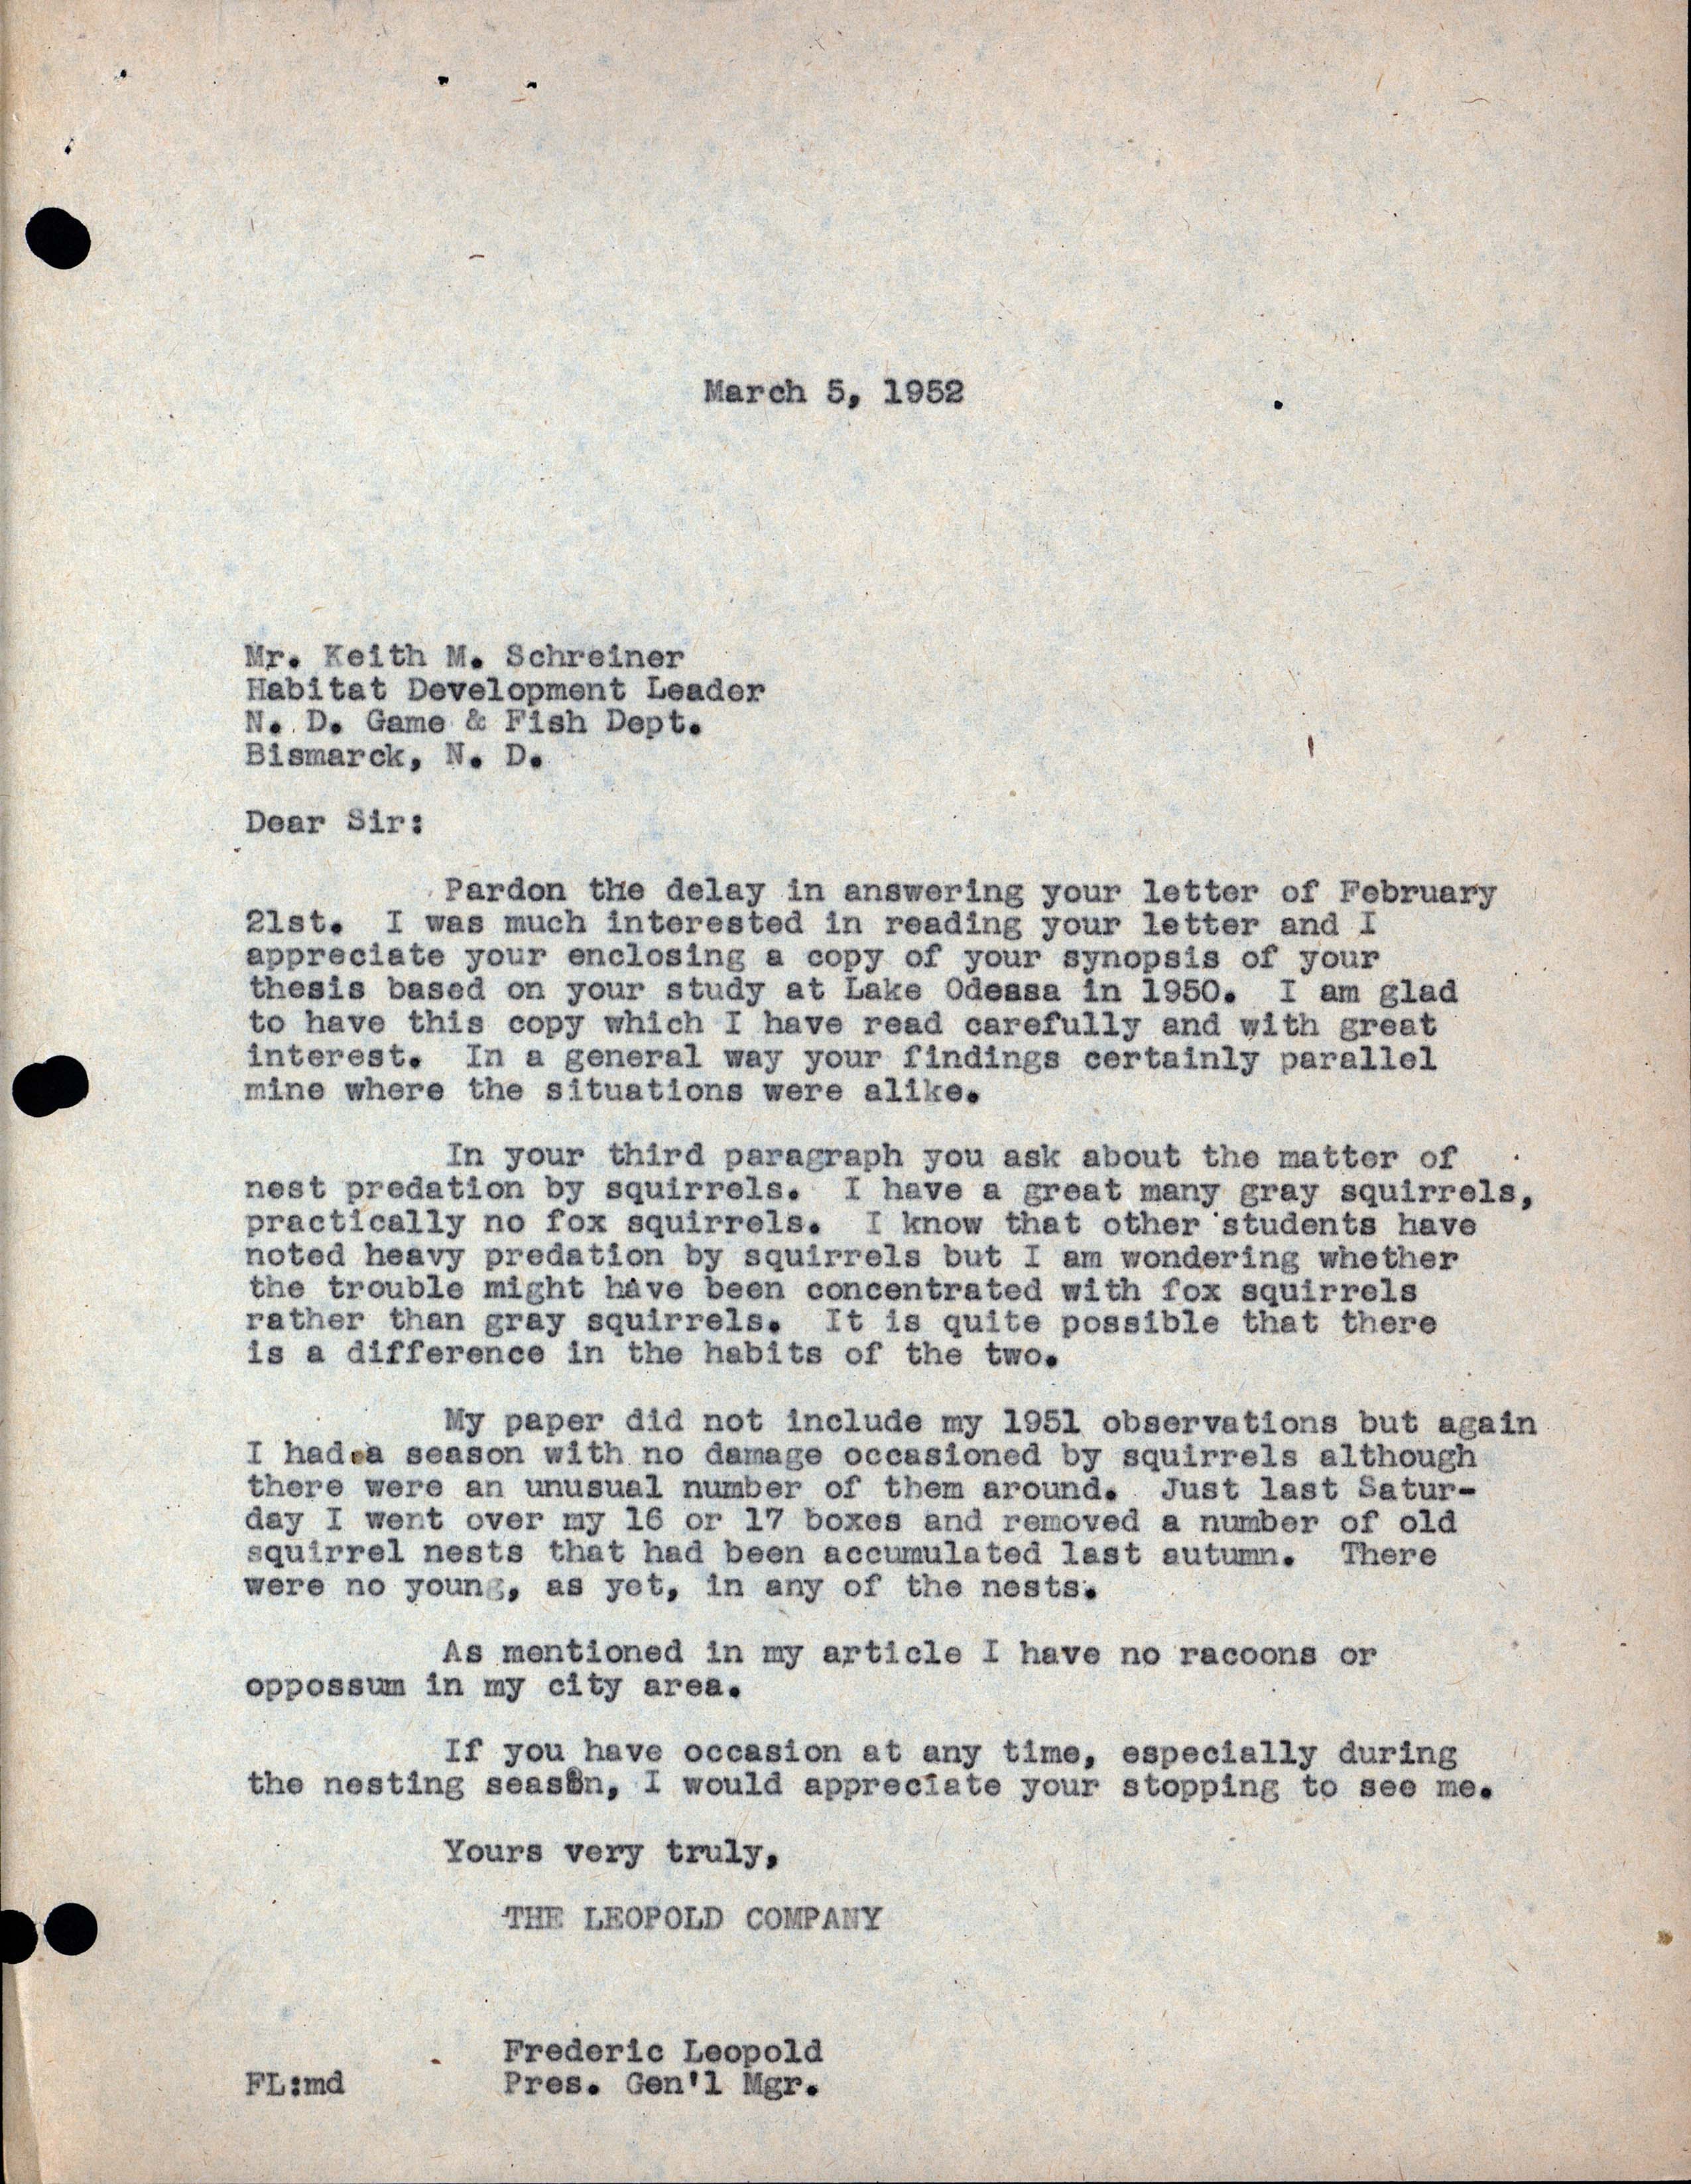 Frederic Leopold letter to Keith M. Schreiner regarding Schreiner's thesis and Wood Duck nest predation, March 5, 1952